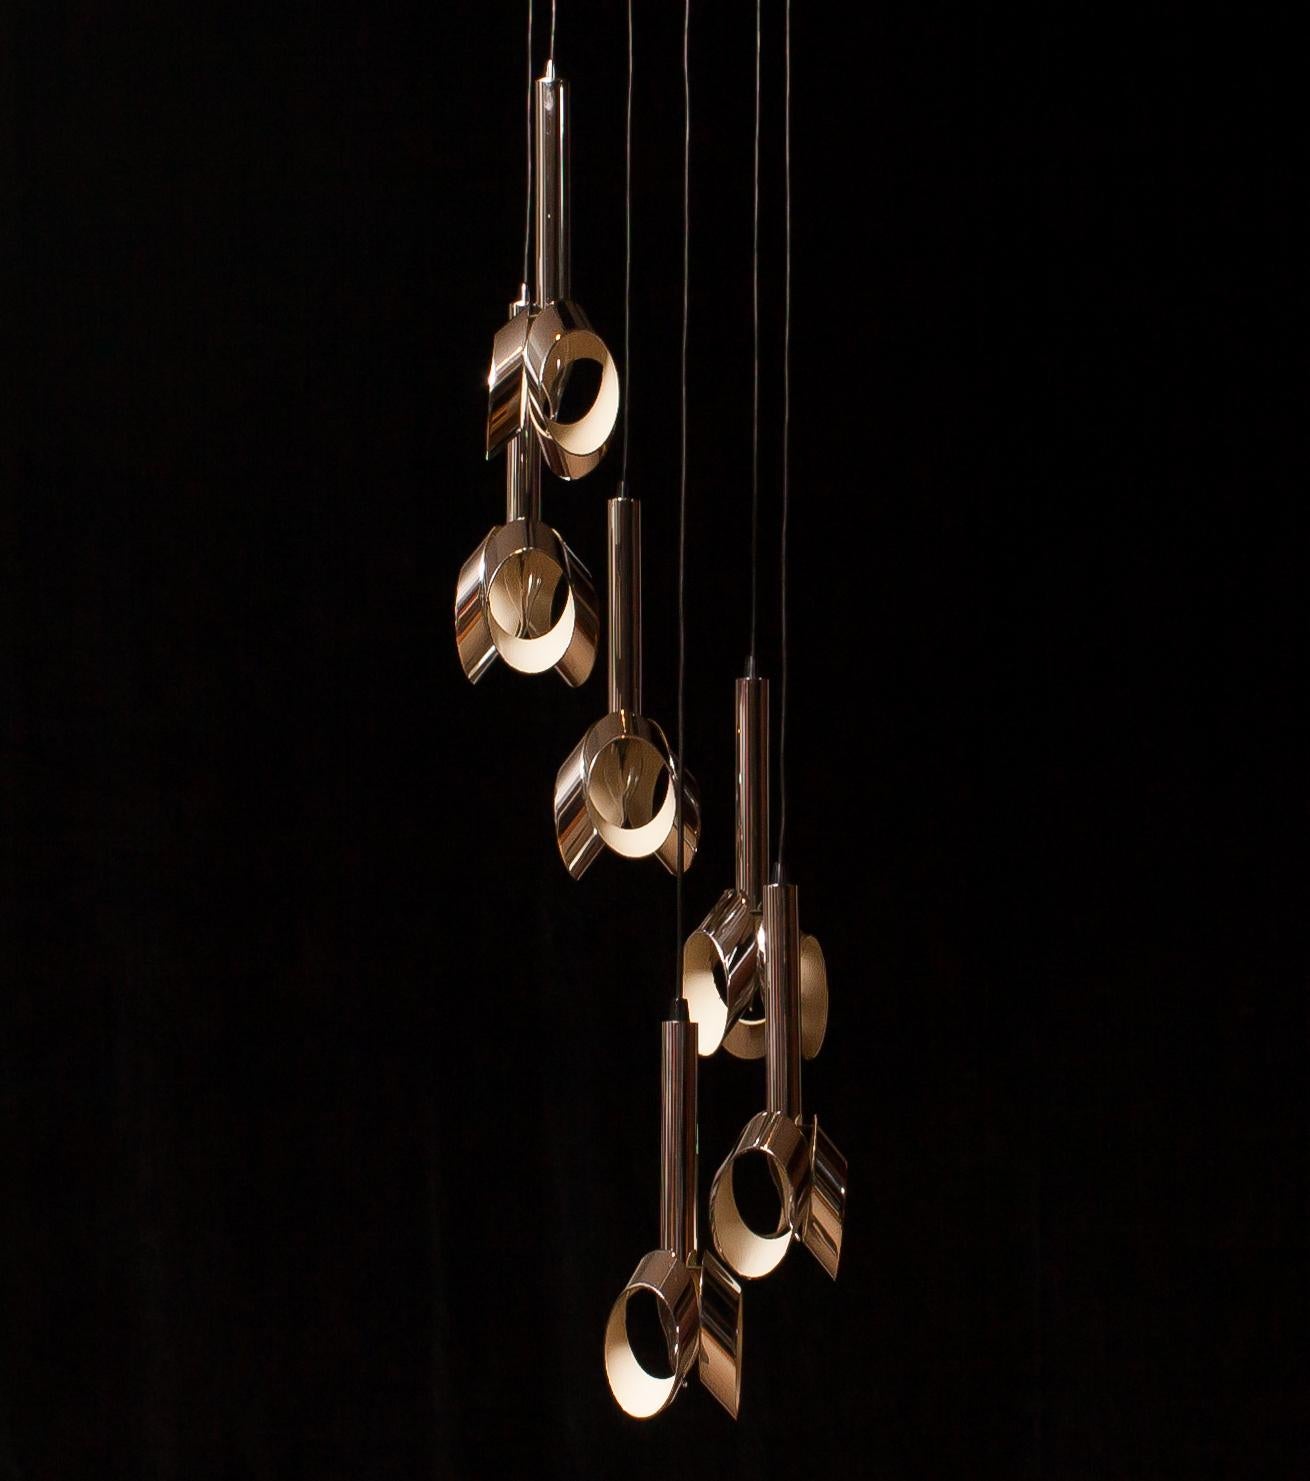 1960s, Chromed Metal Ceiling Lamp Chandelier by RAAK, Amsterdam 2